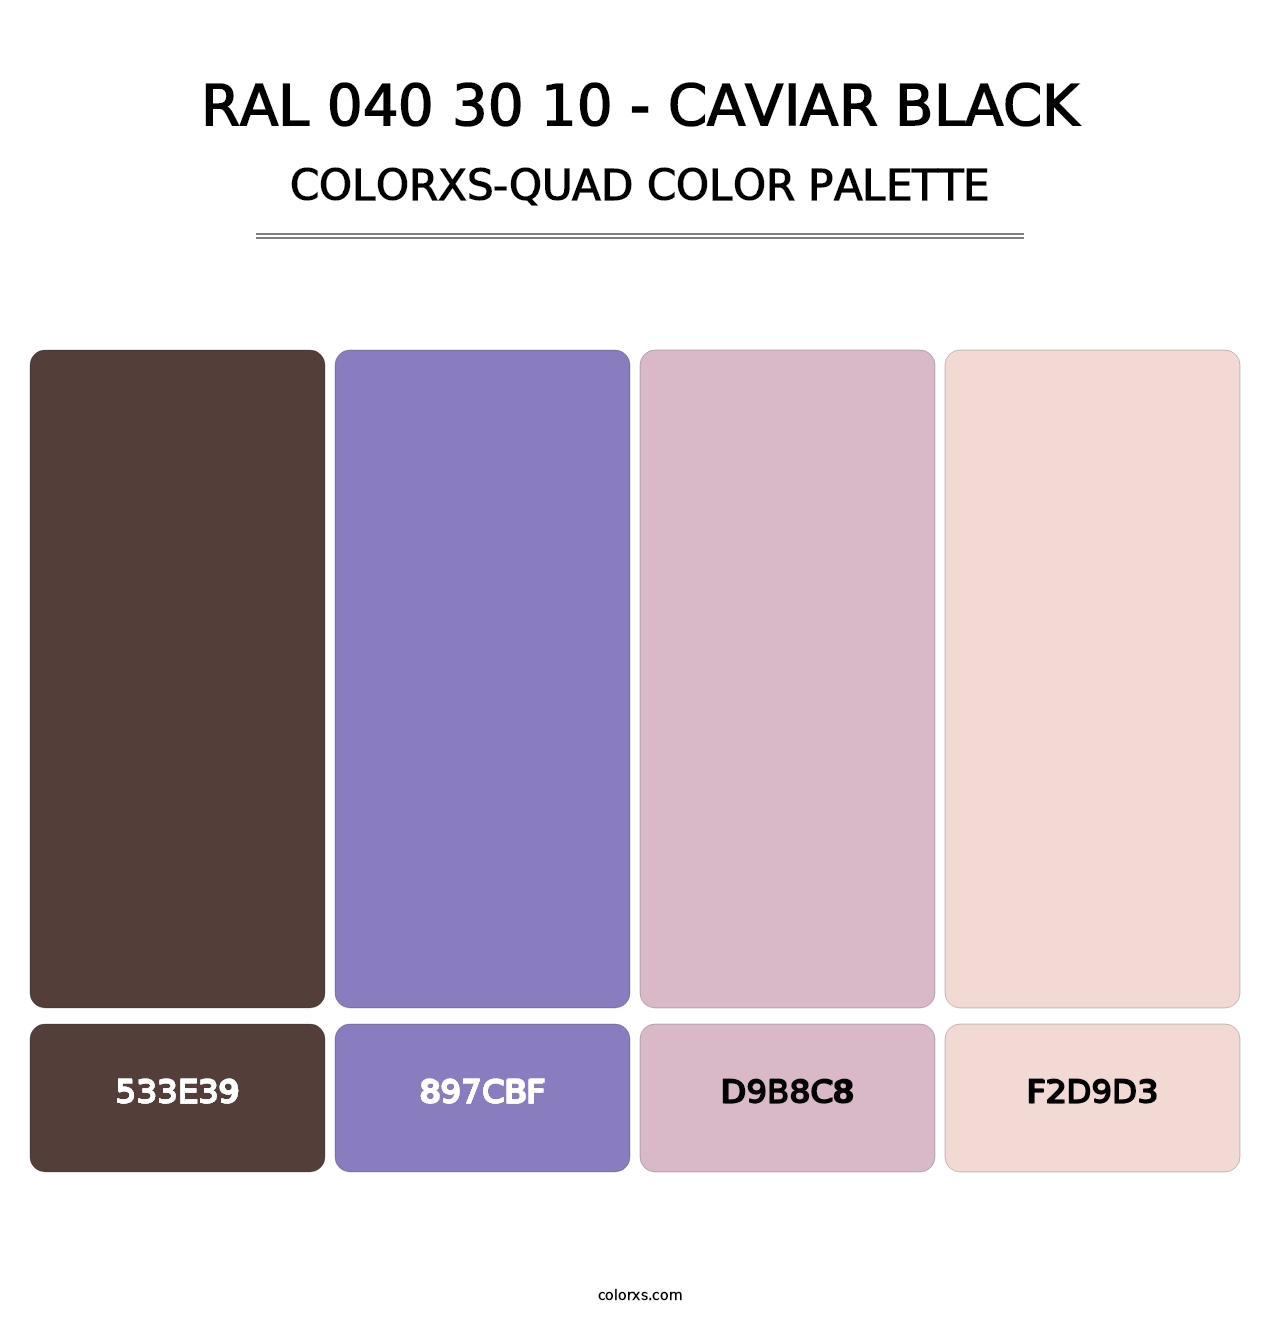 RAL 040 30 10 - Caviar Black - Colorxs Quad Palette